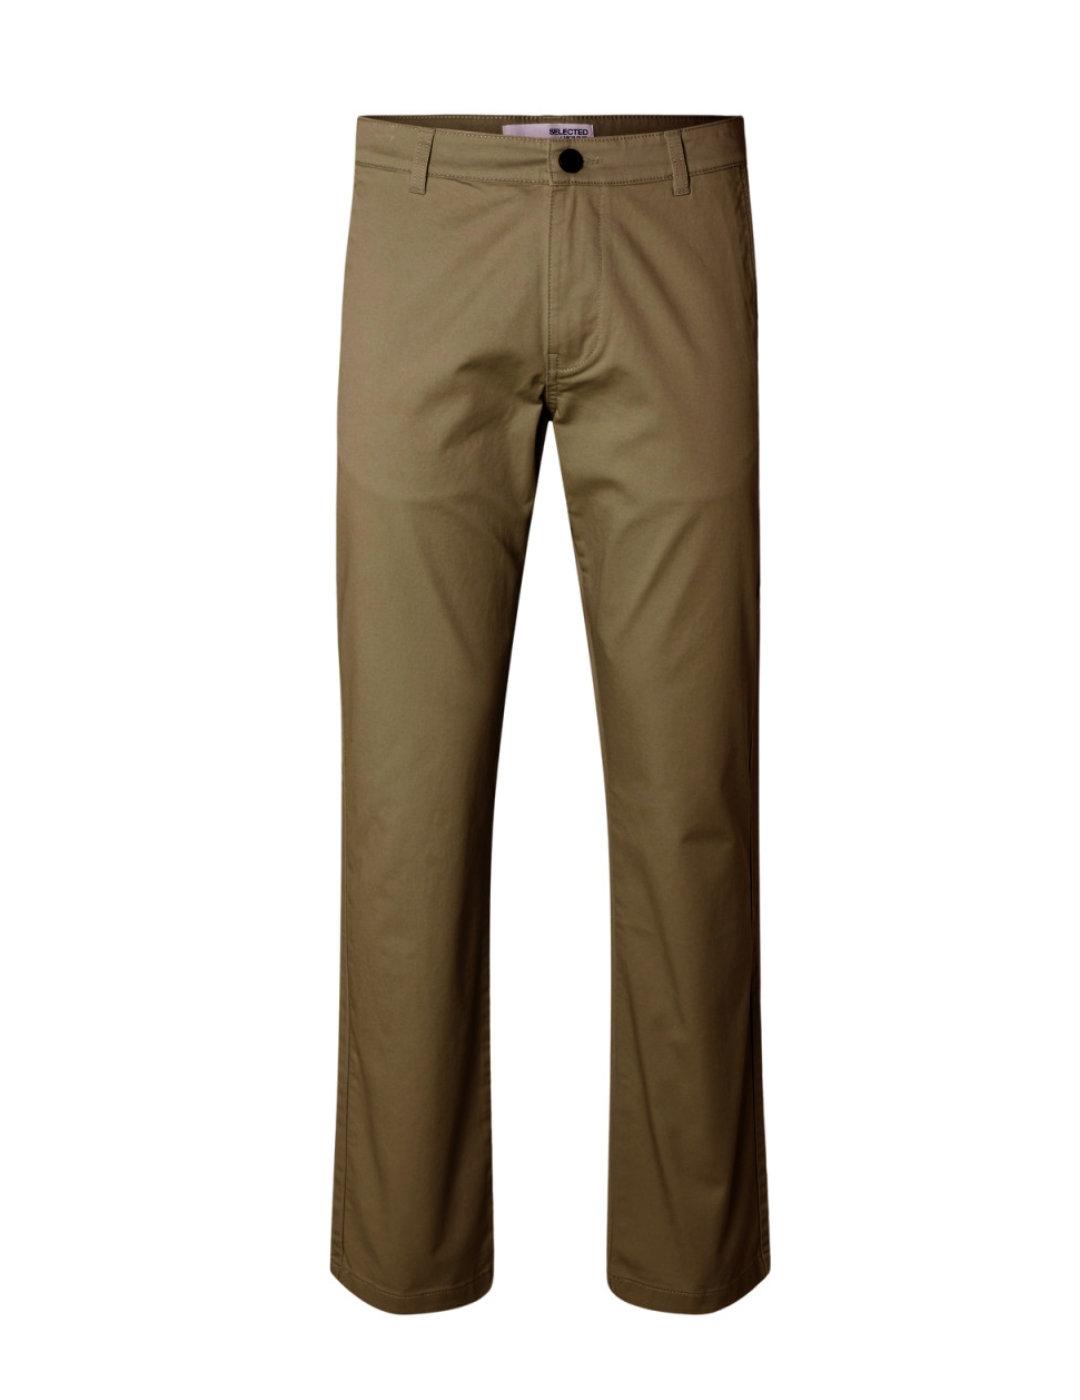 Pantalón Selected straight marrón para hombre